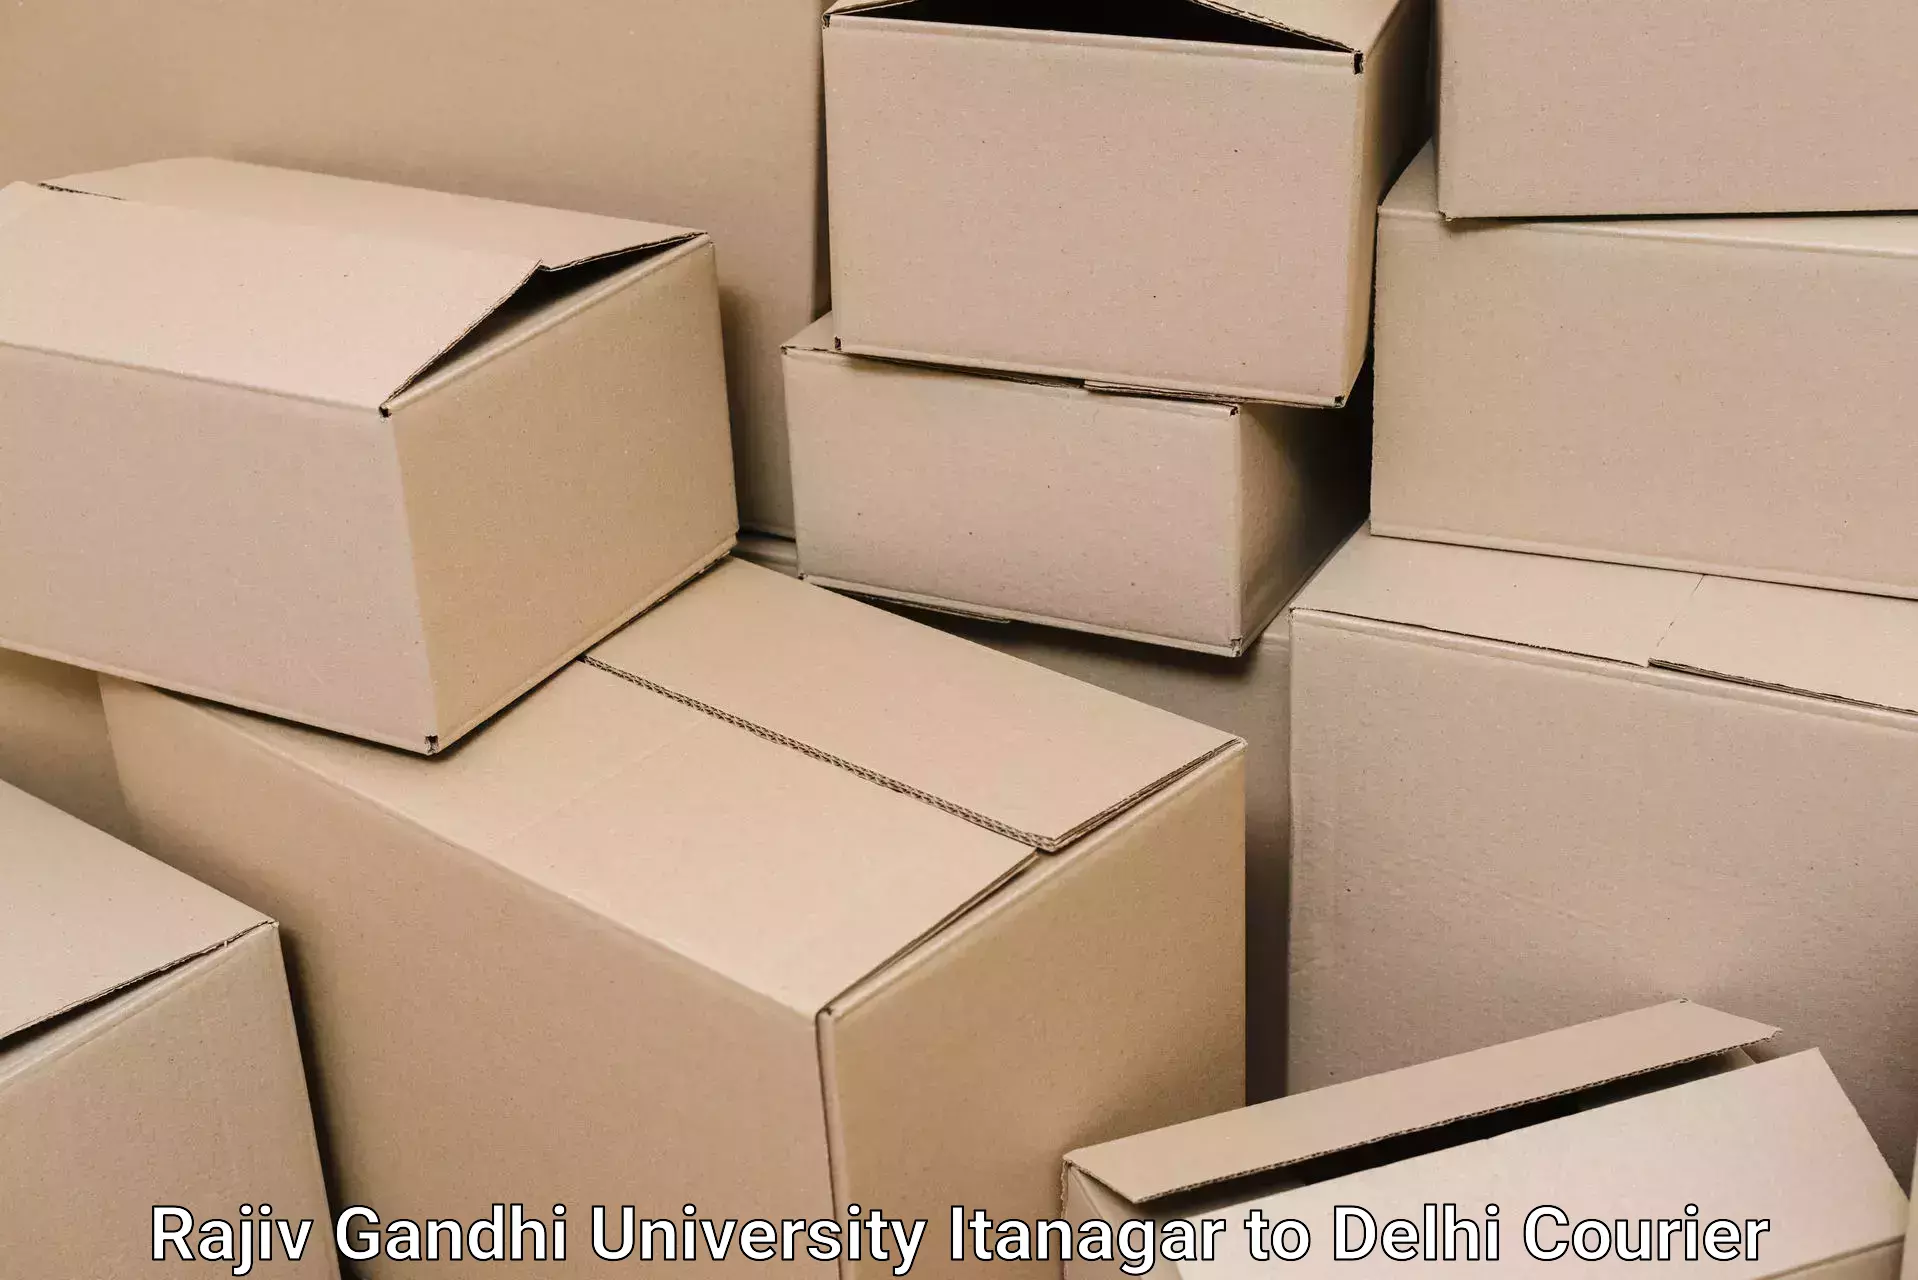 Furniture moving plans Rajiv Gandhi University Itanagar to Kalkaji